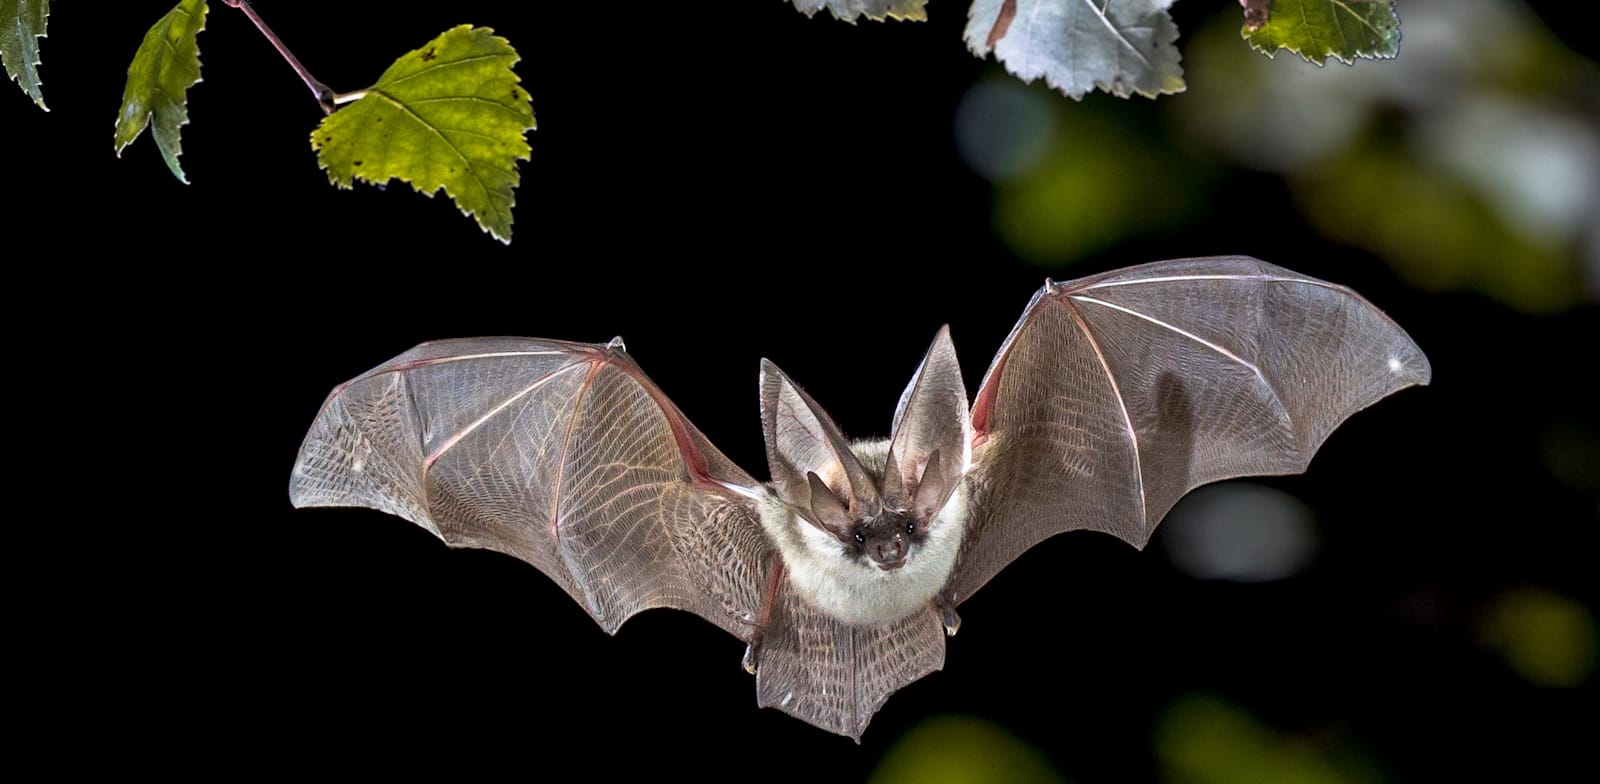 עטלף. יותר מ־60% מהמחלות הזיהומיות המתגלות בבני אדם כיום מגיעות מבעלי חיים / צילום: Shutterstock